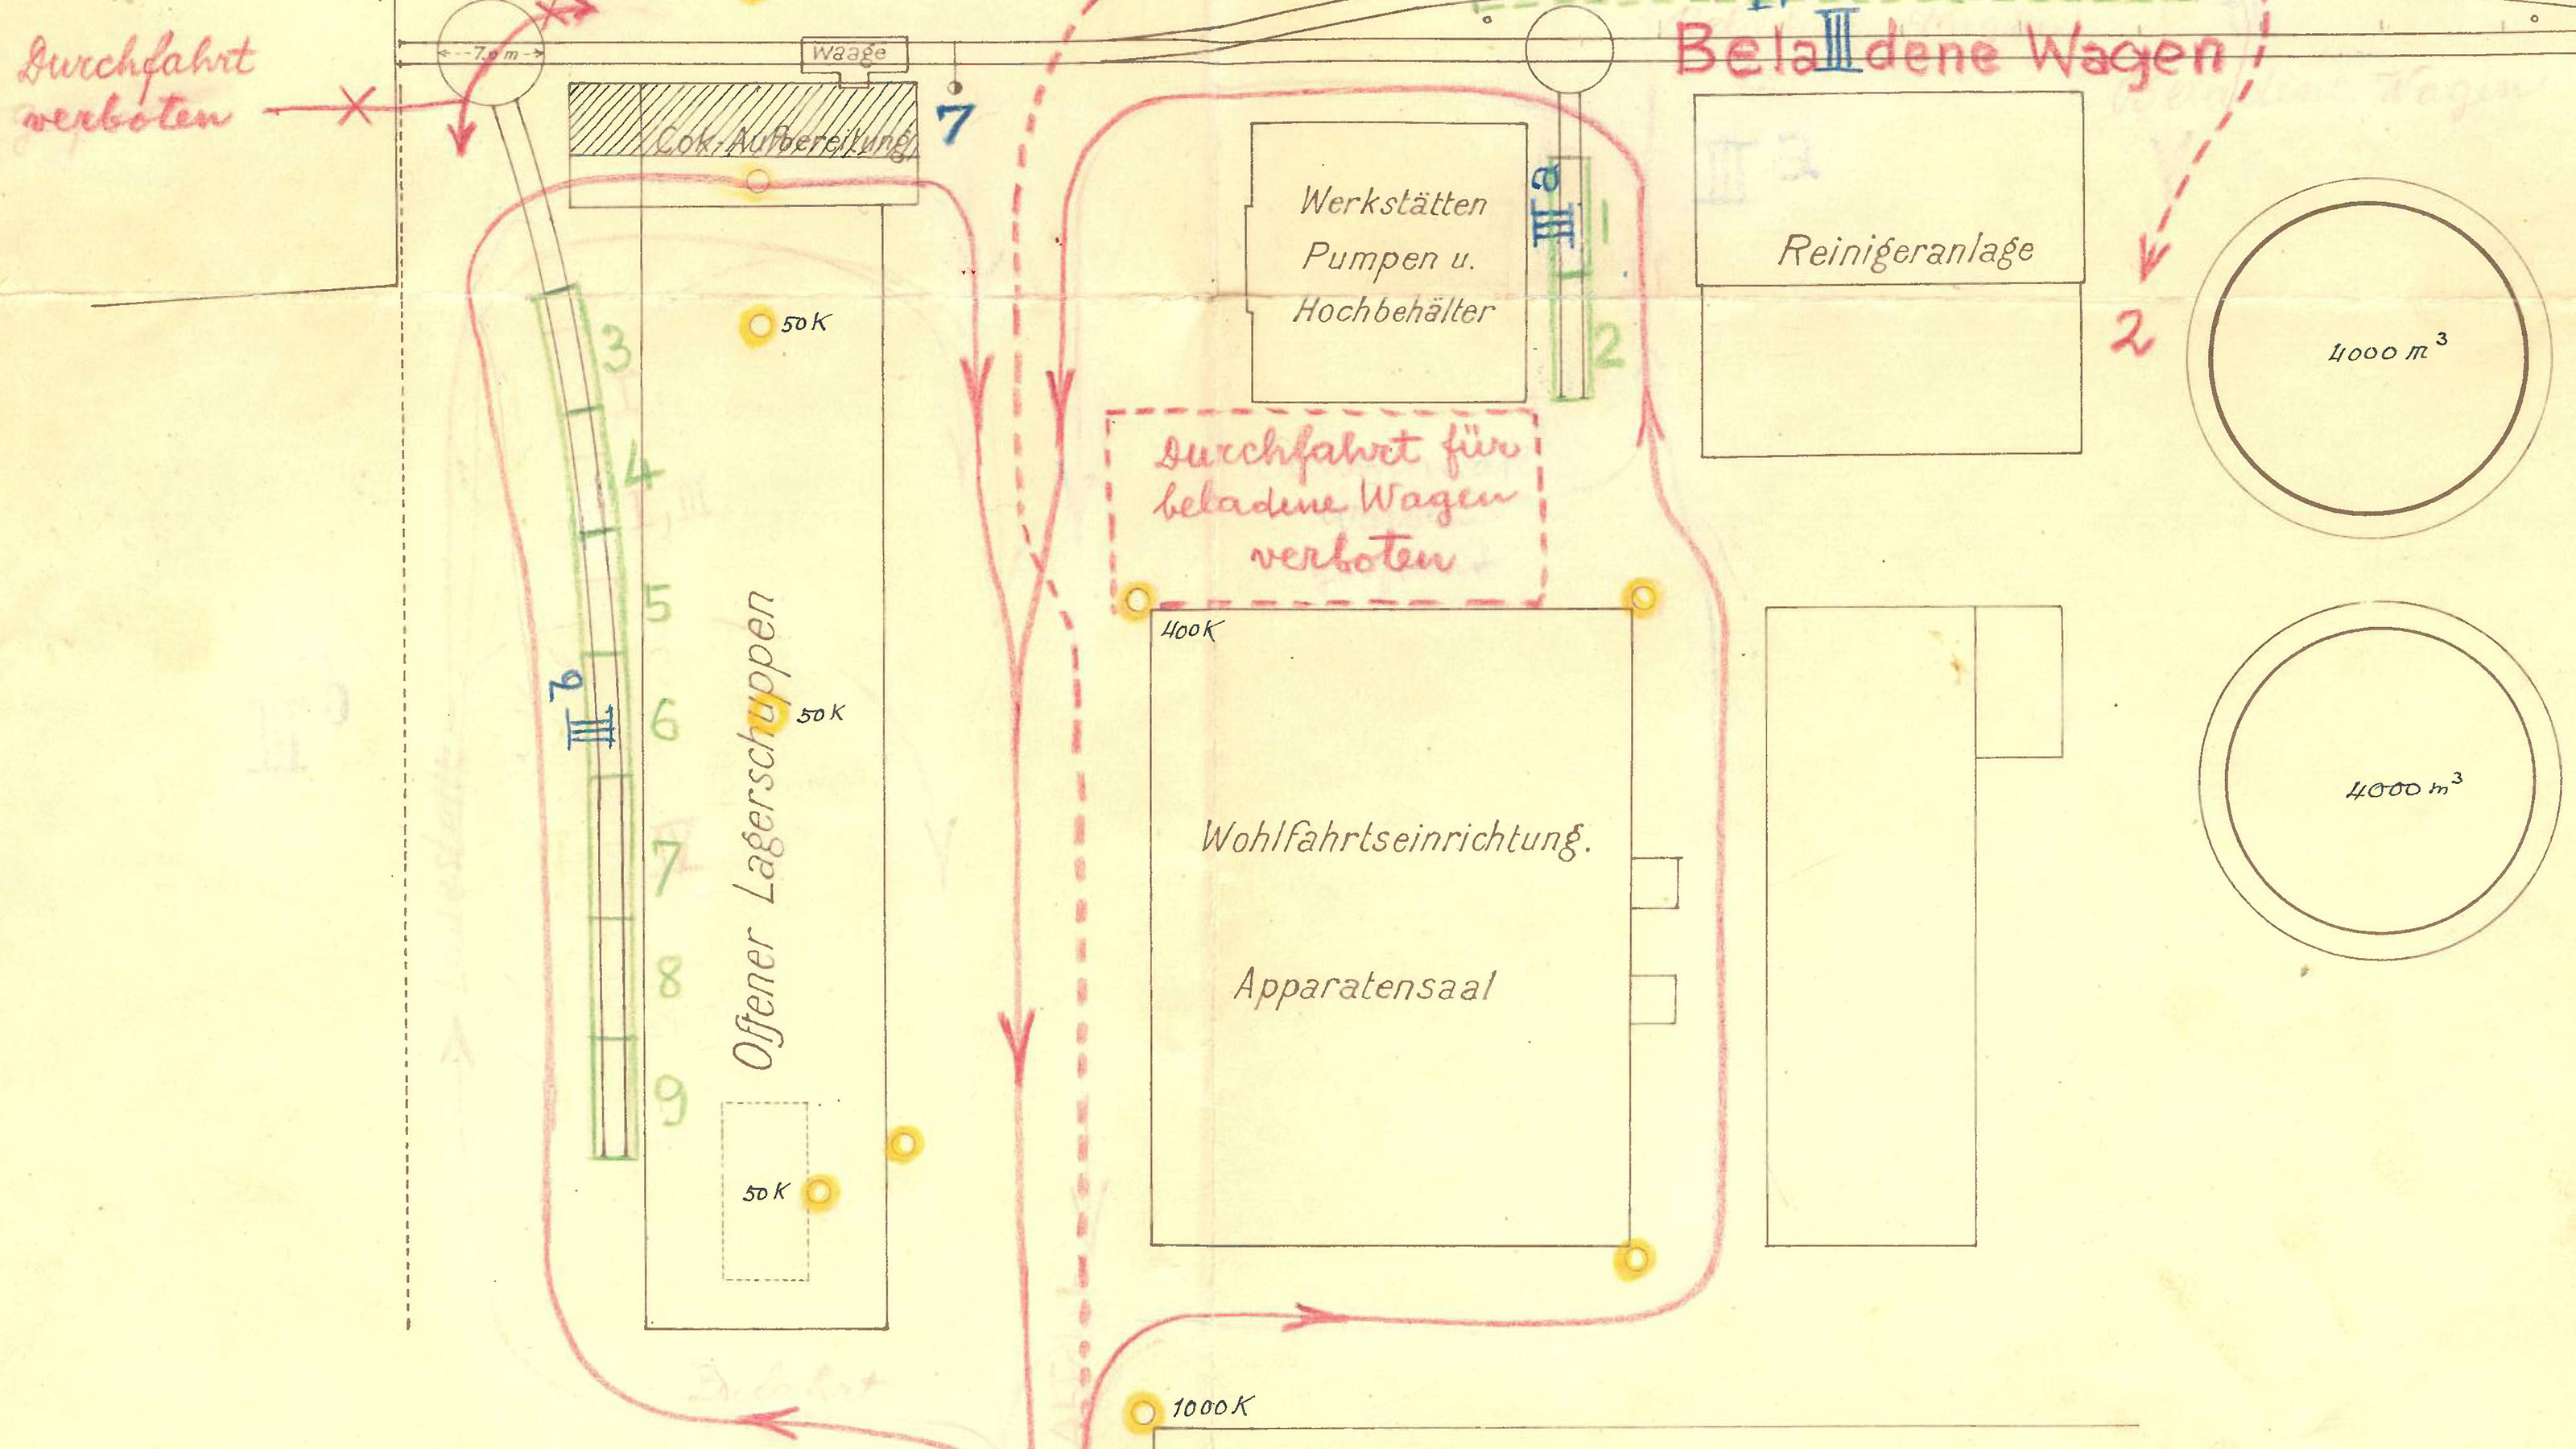 Handgezeichneter Evakuationsplan, der die Evakuation der Landestopografie nahe des Gaswerkes Bern im Detail zeigt.